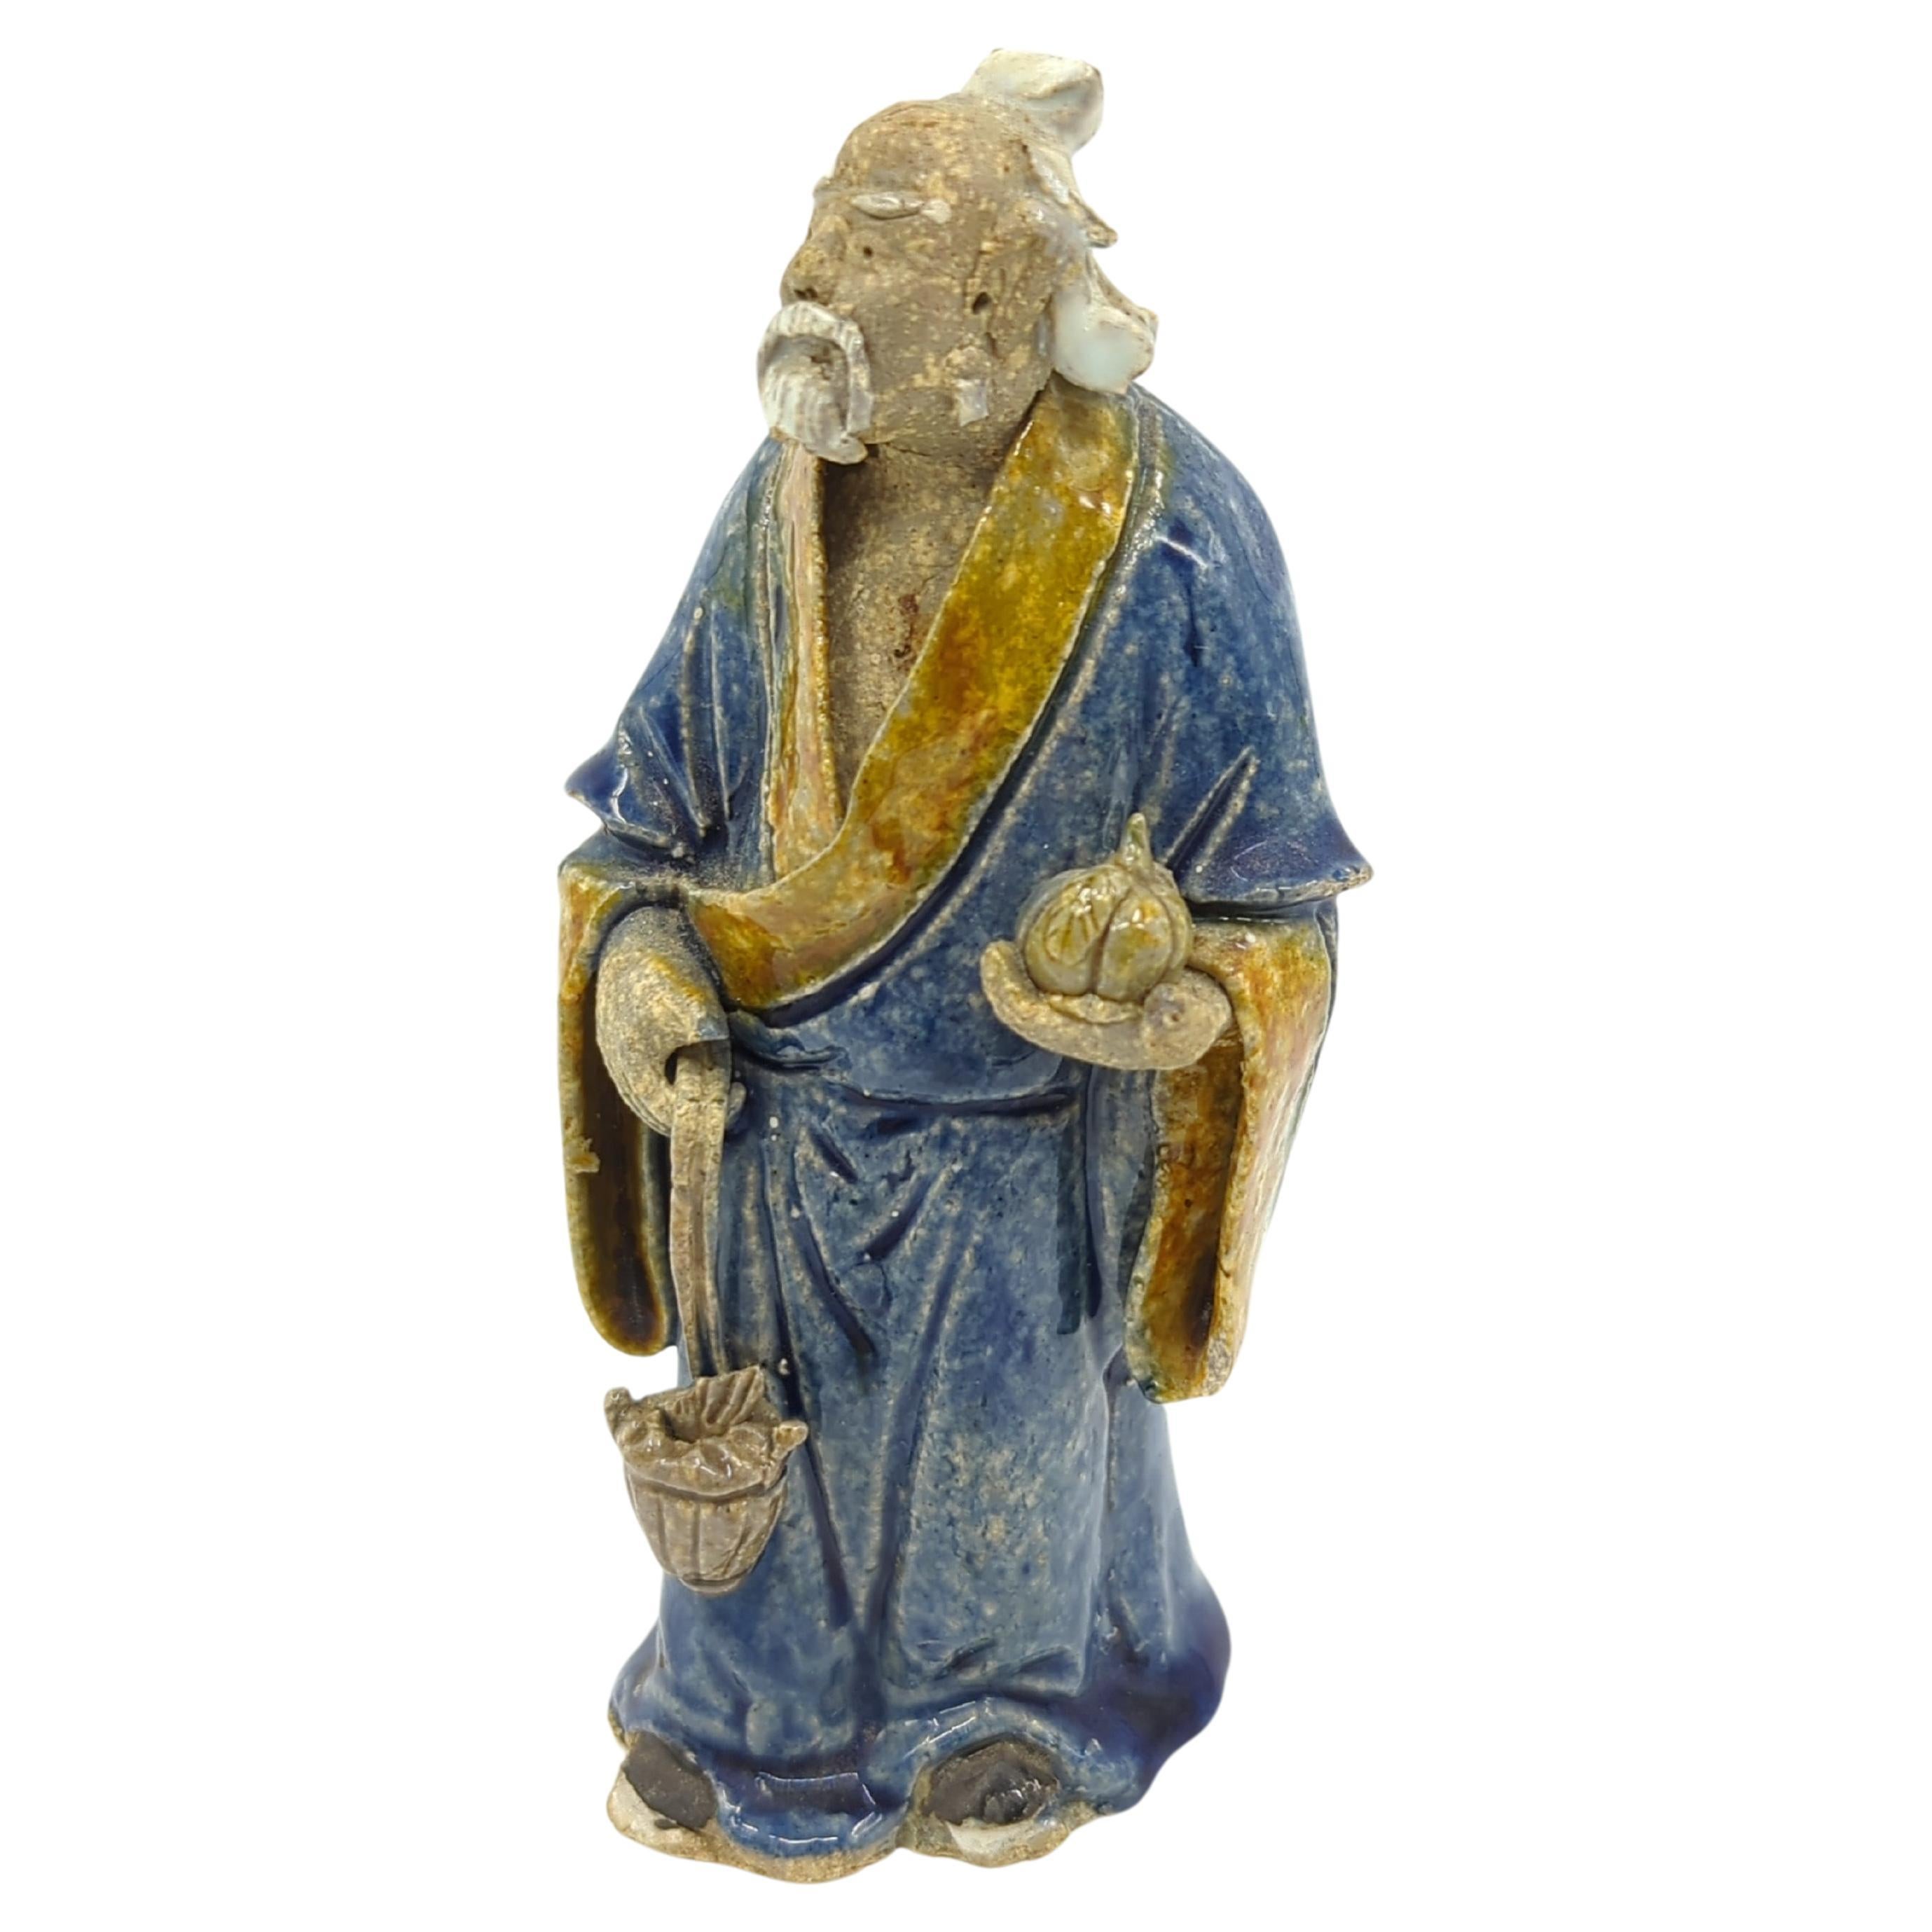 Antike chinesische, handgefertigte und handbemalte Lehmfigur eines stehenden älteren Gelehrten in blauem Gewand, der in der einen Hand einen großen, gelappten Kürbis hält und in der anderen einen gefüllten Fischkorb trägt. Die Figur hält eine